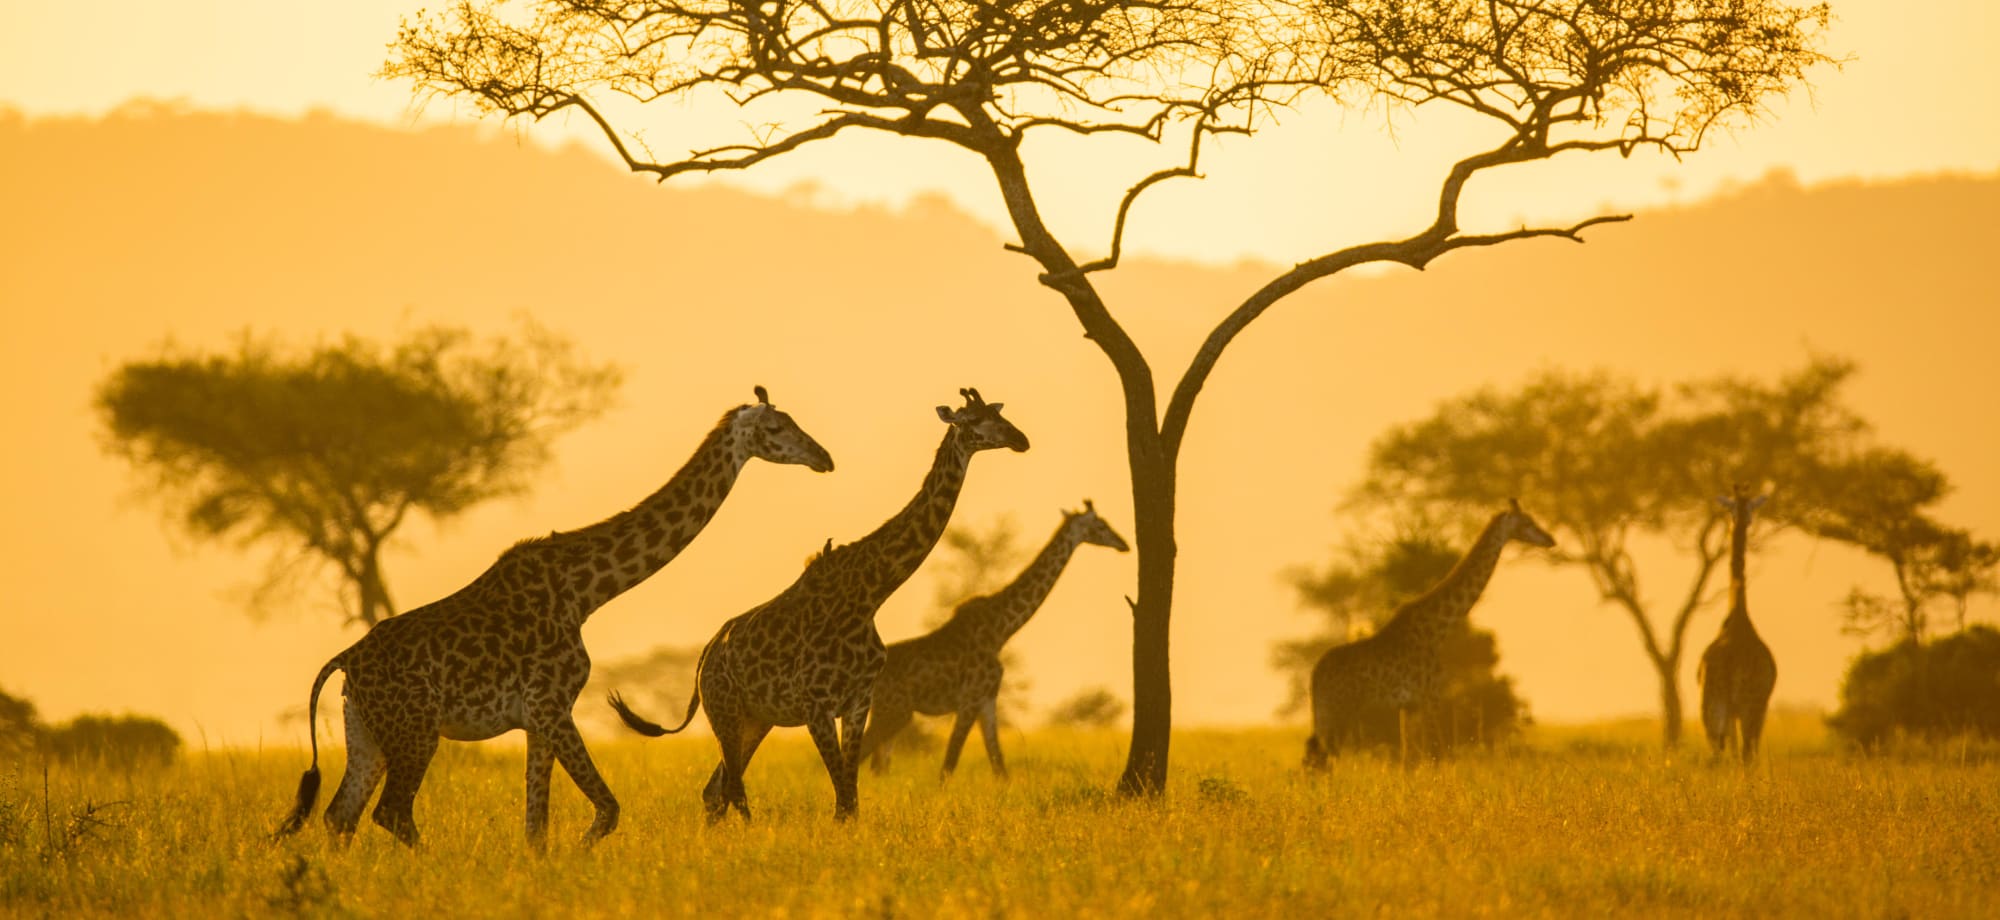 Tanzania_serengeti_giraffes_Elewana_Serengeti_Pioneer_Camp